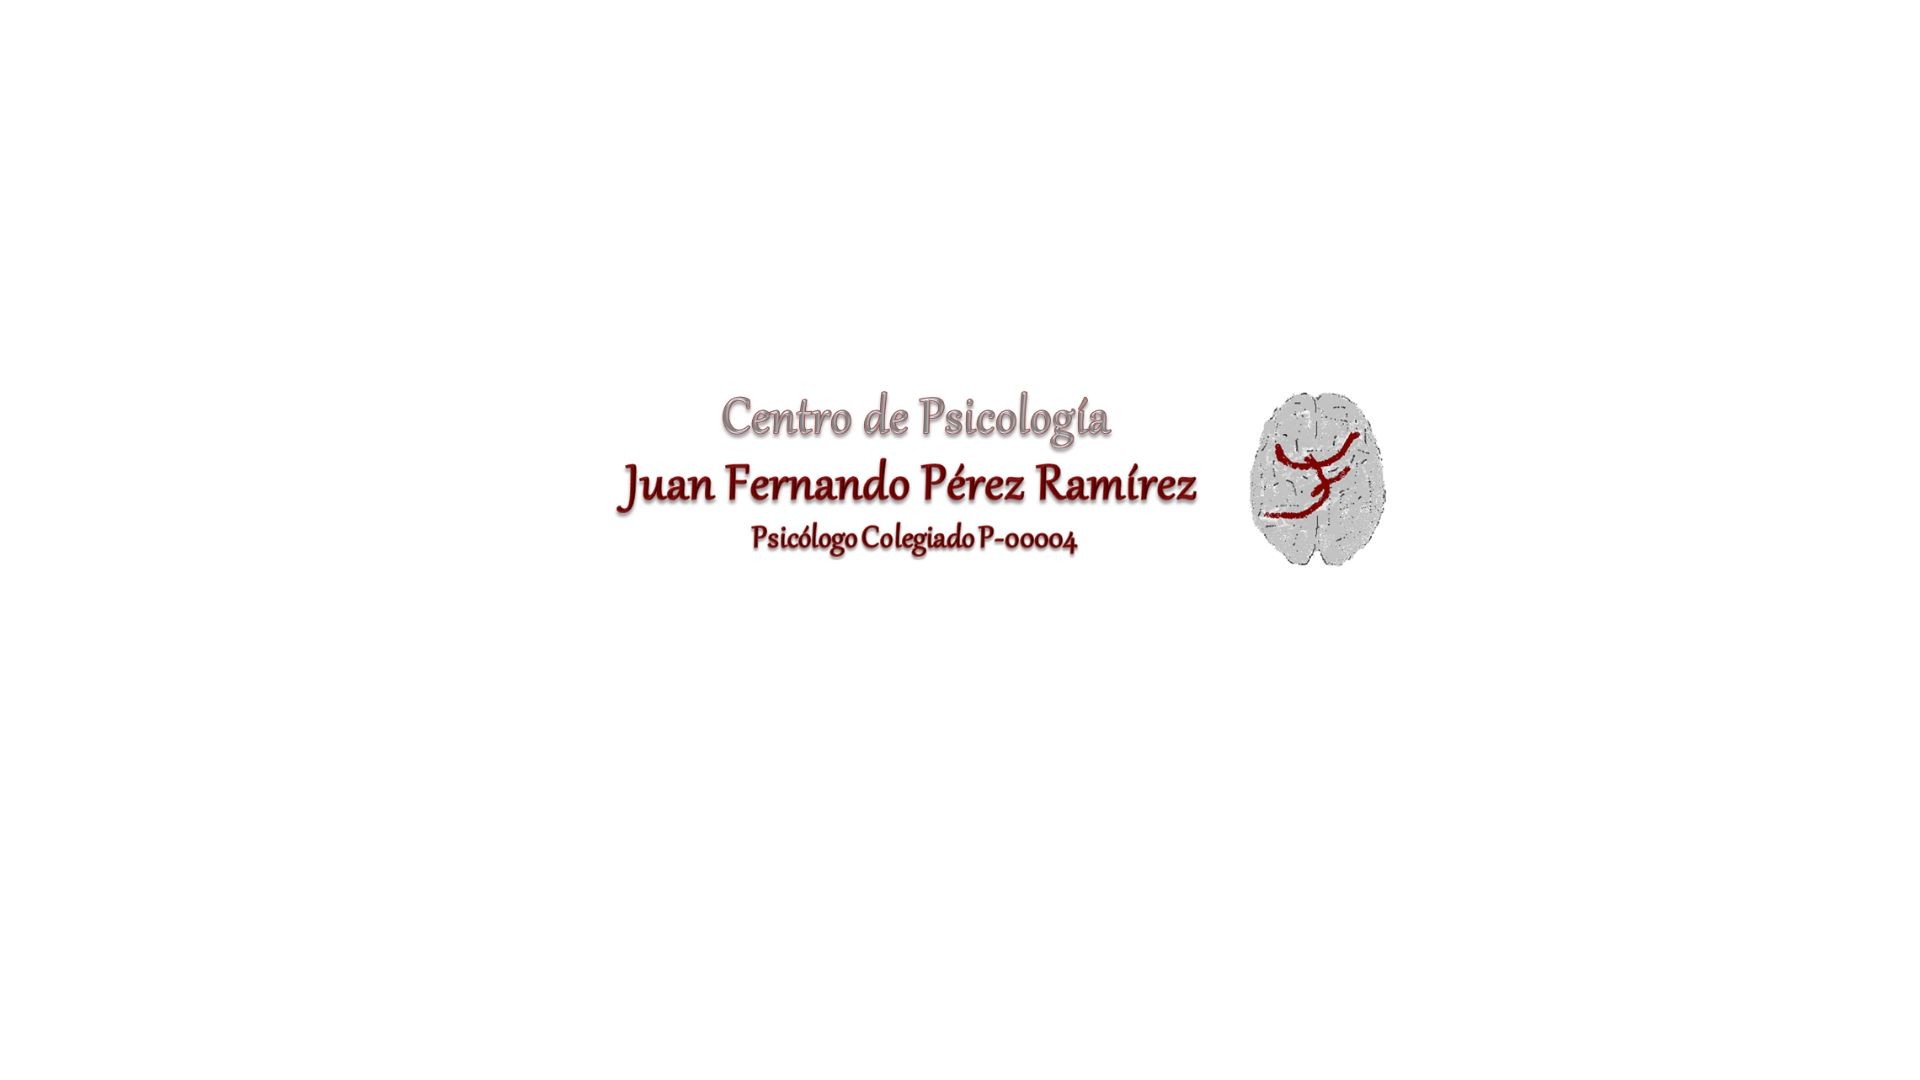 Psicólogo Juan Fernando Pérez Ramírez